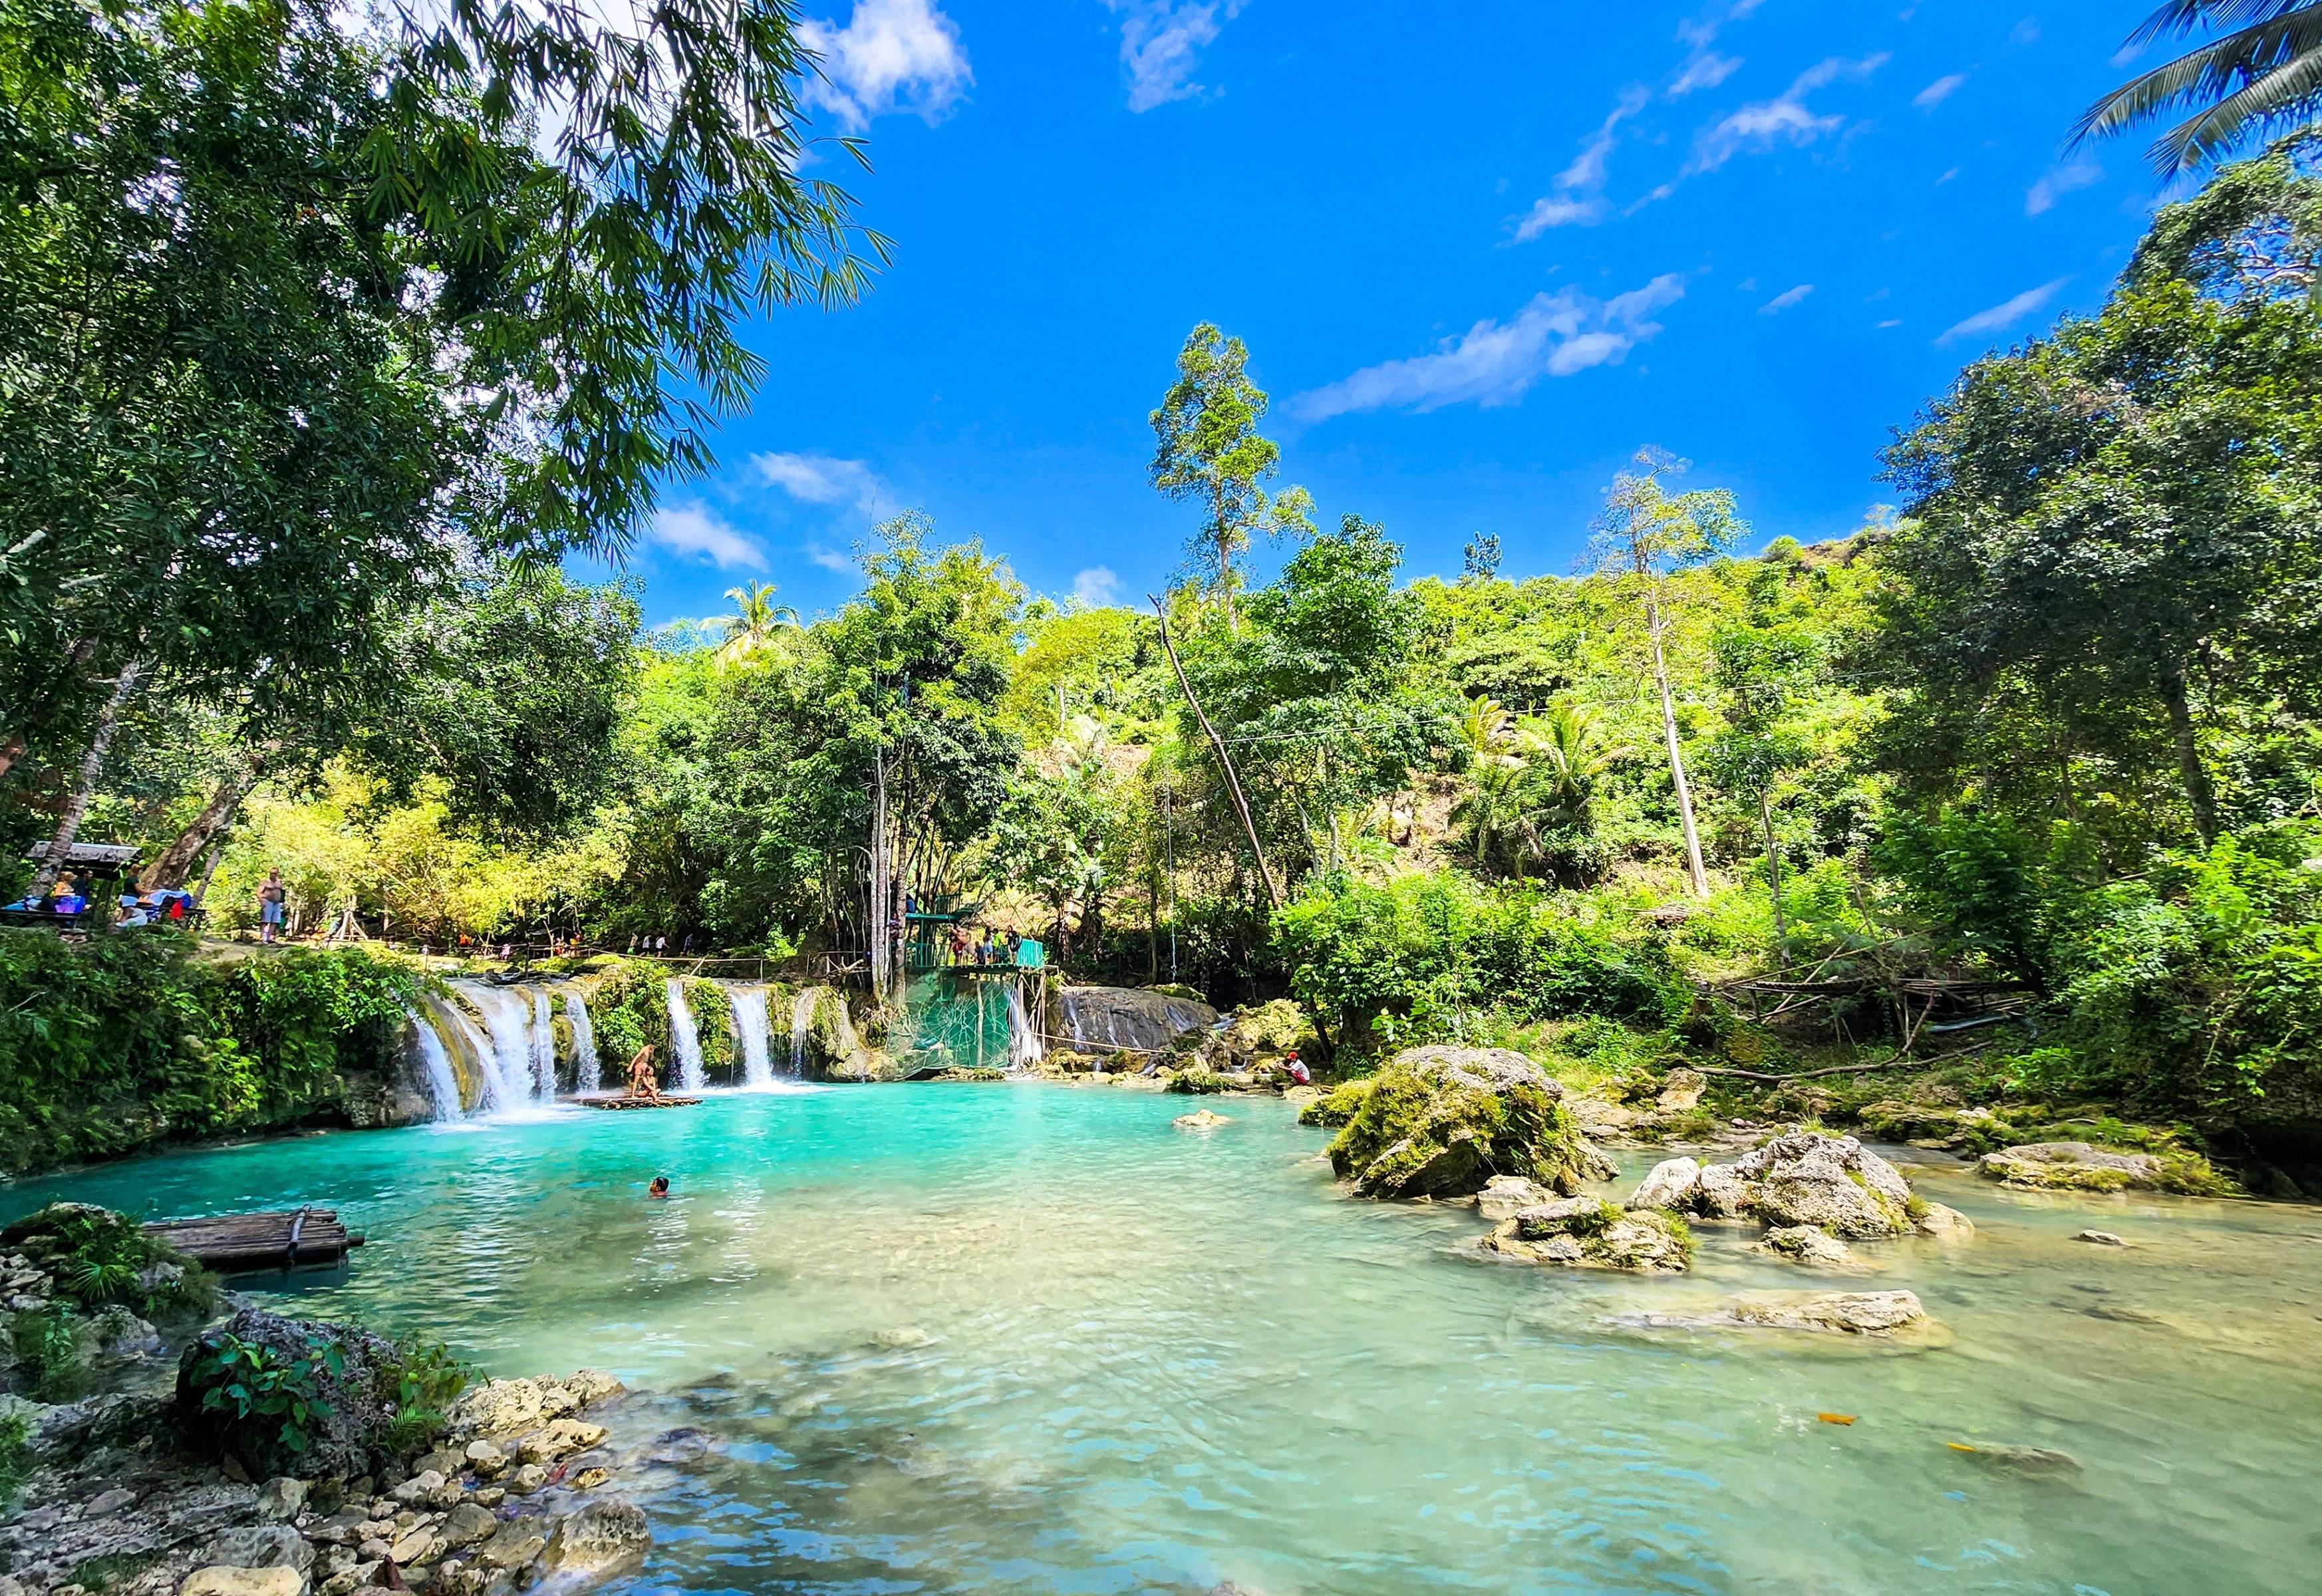 Erleben Sie die faszinierenden Cambugahay-Wasserfälle